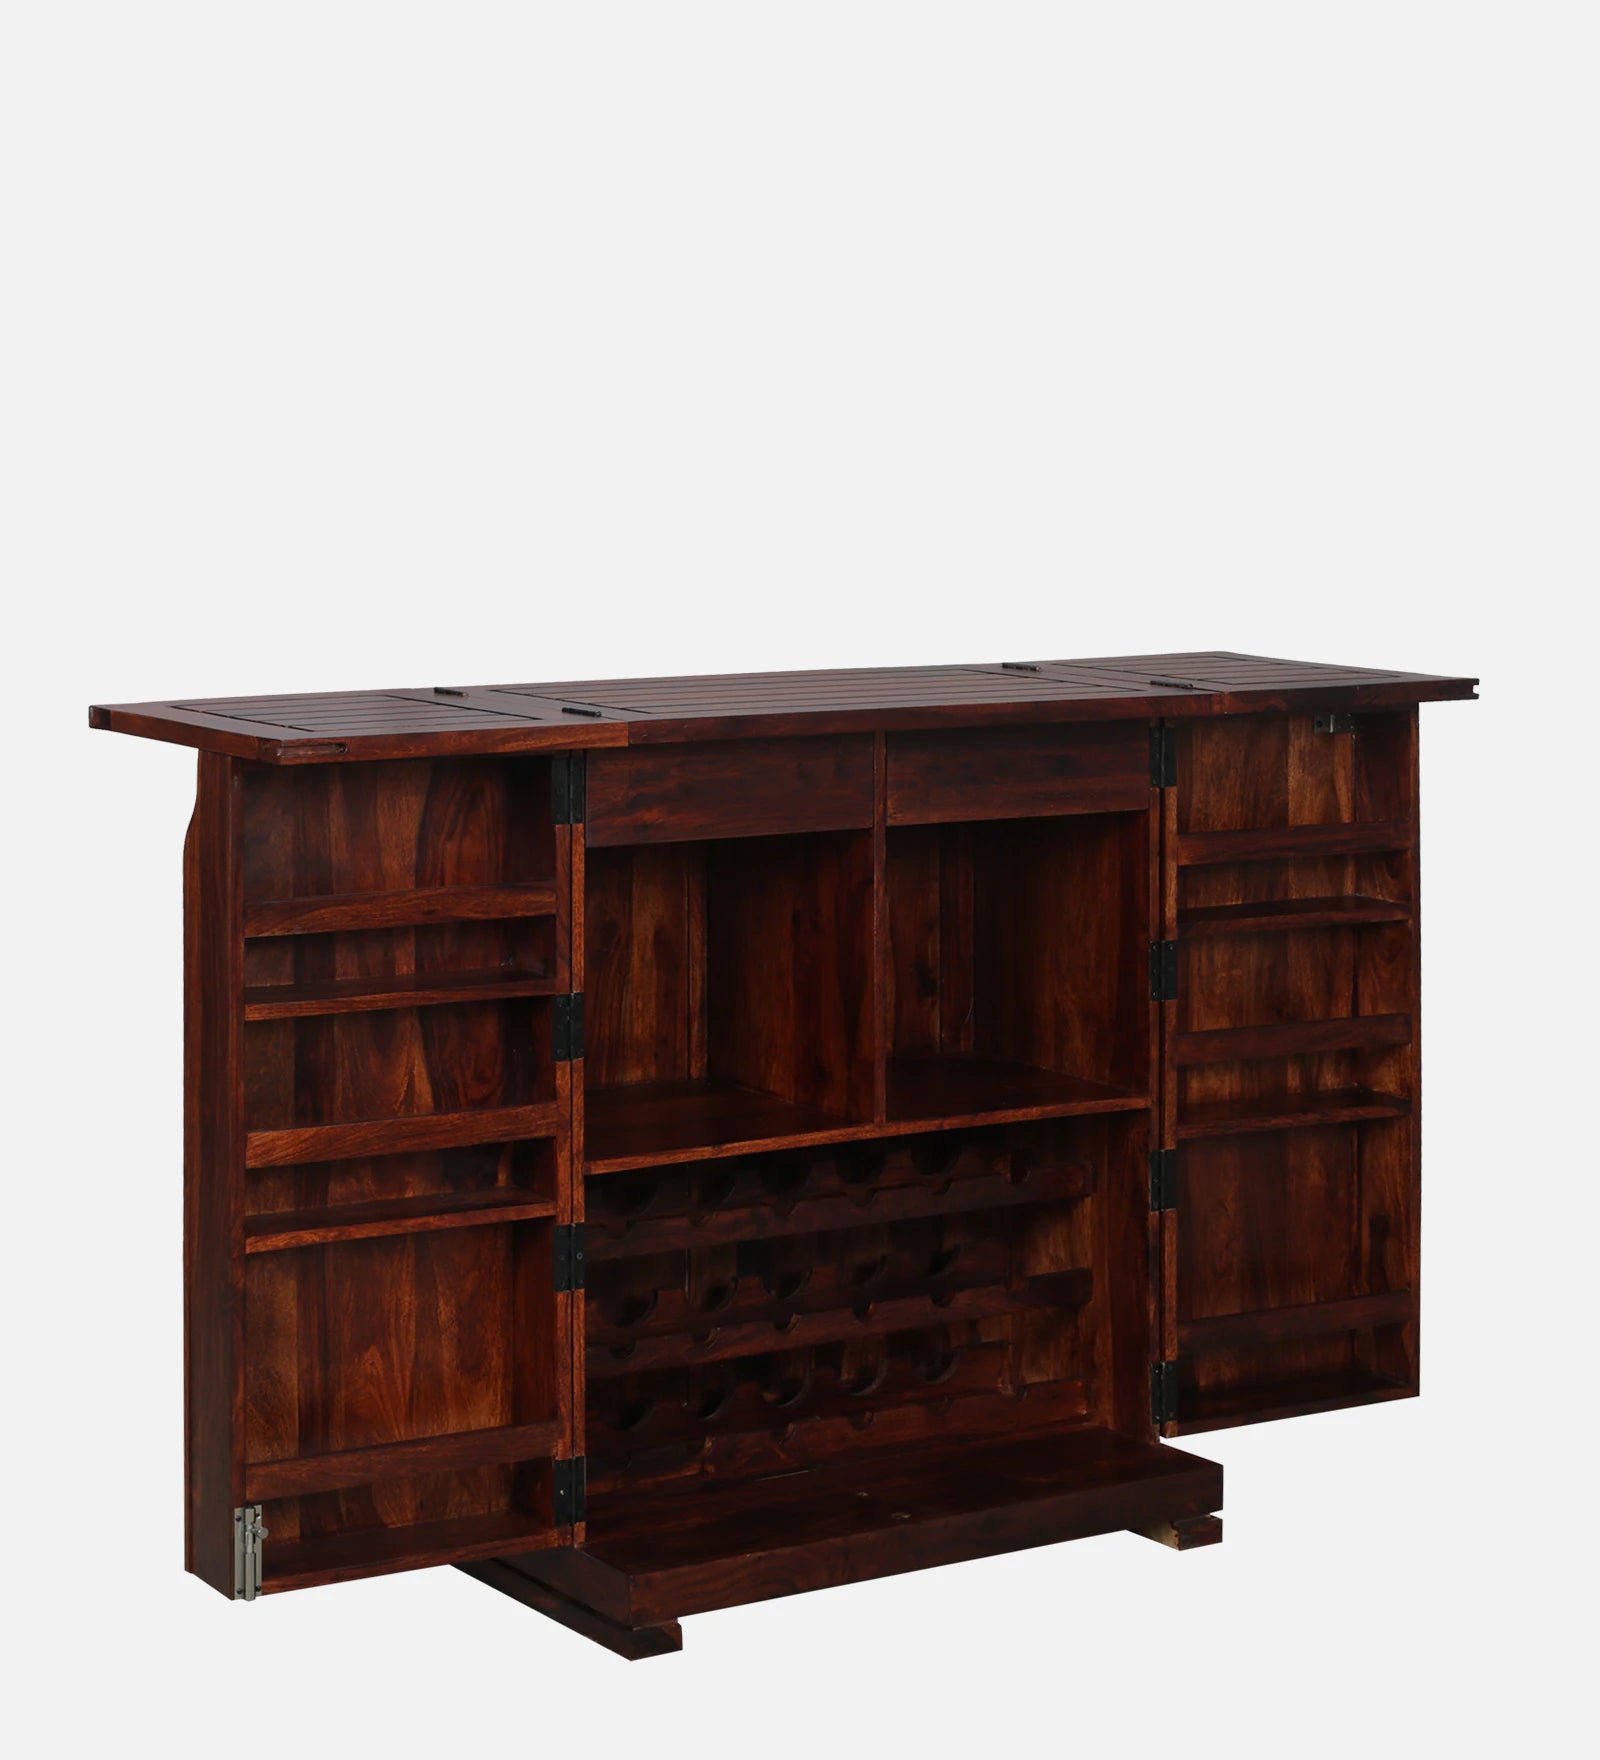 Moscow Solid Wood Bar Cabinet In Honey Oak Finish By Rajwada - Rajwada Furnish